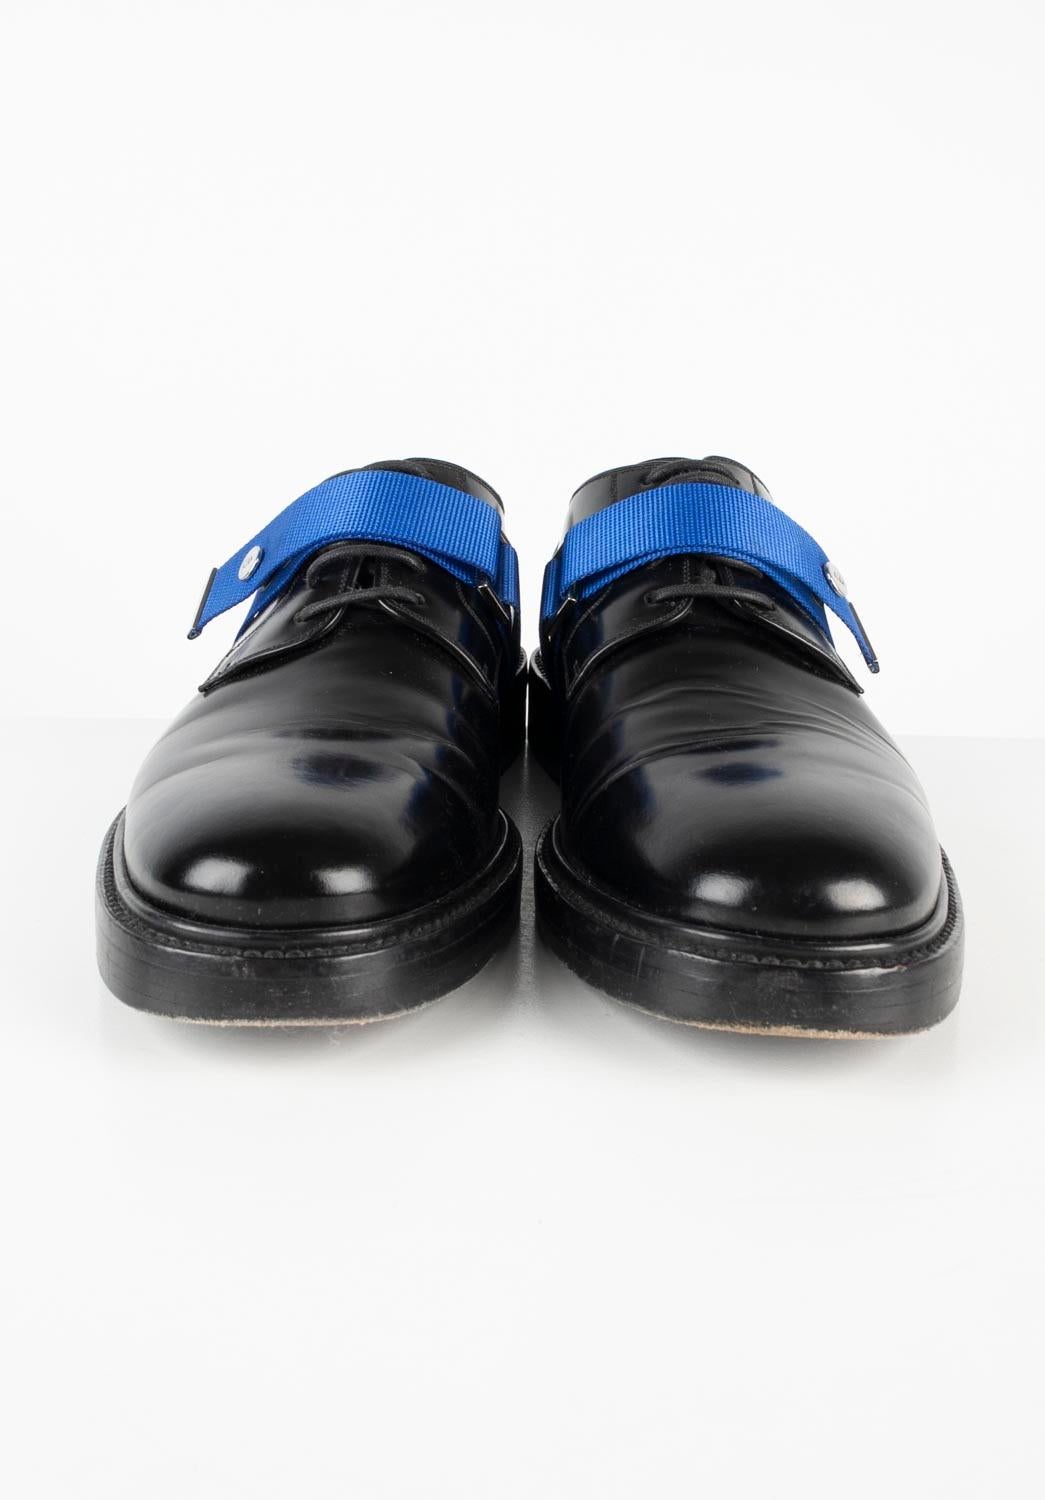 Artikel zu verkaufen ist 100% echt Dior Homme AW15 Männer Schuhe, S693
Farbe: schwarz
(Eine tatsächliche Farbe kann ein wenig variieren aufgrund individueller Computer-Bildschirm Interpretation)
MATERIAL: 100% Lackleder
Tag Größe: 40 ½, USA7,